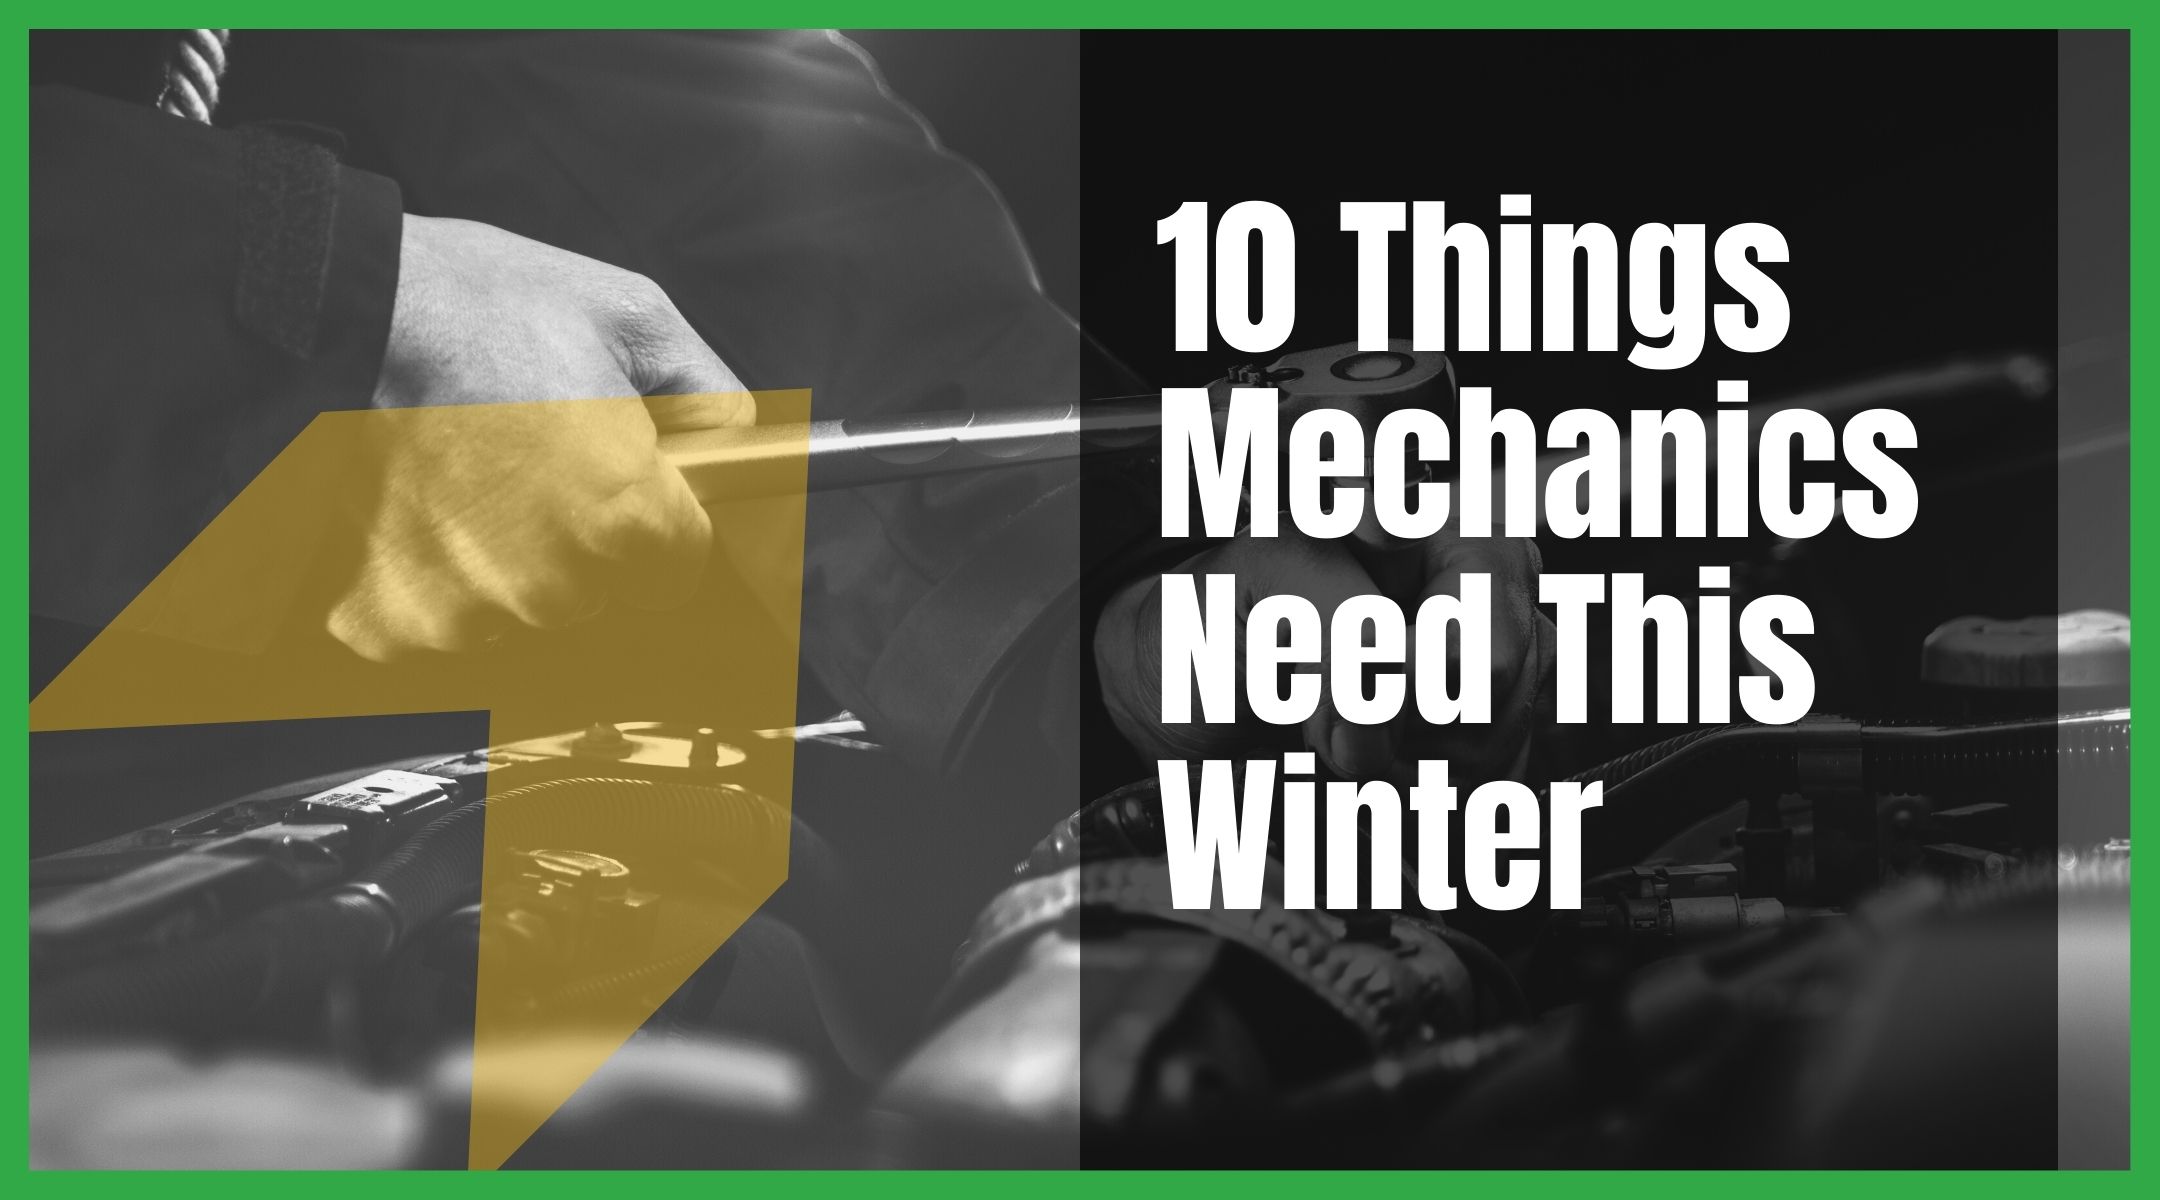 10 Things Mechanics Need This Winter